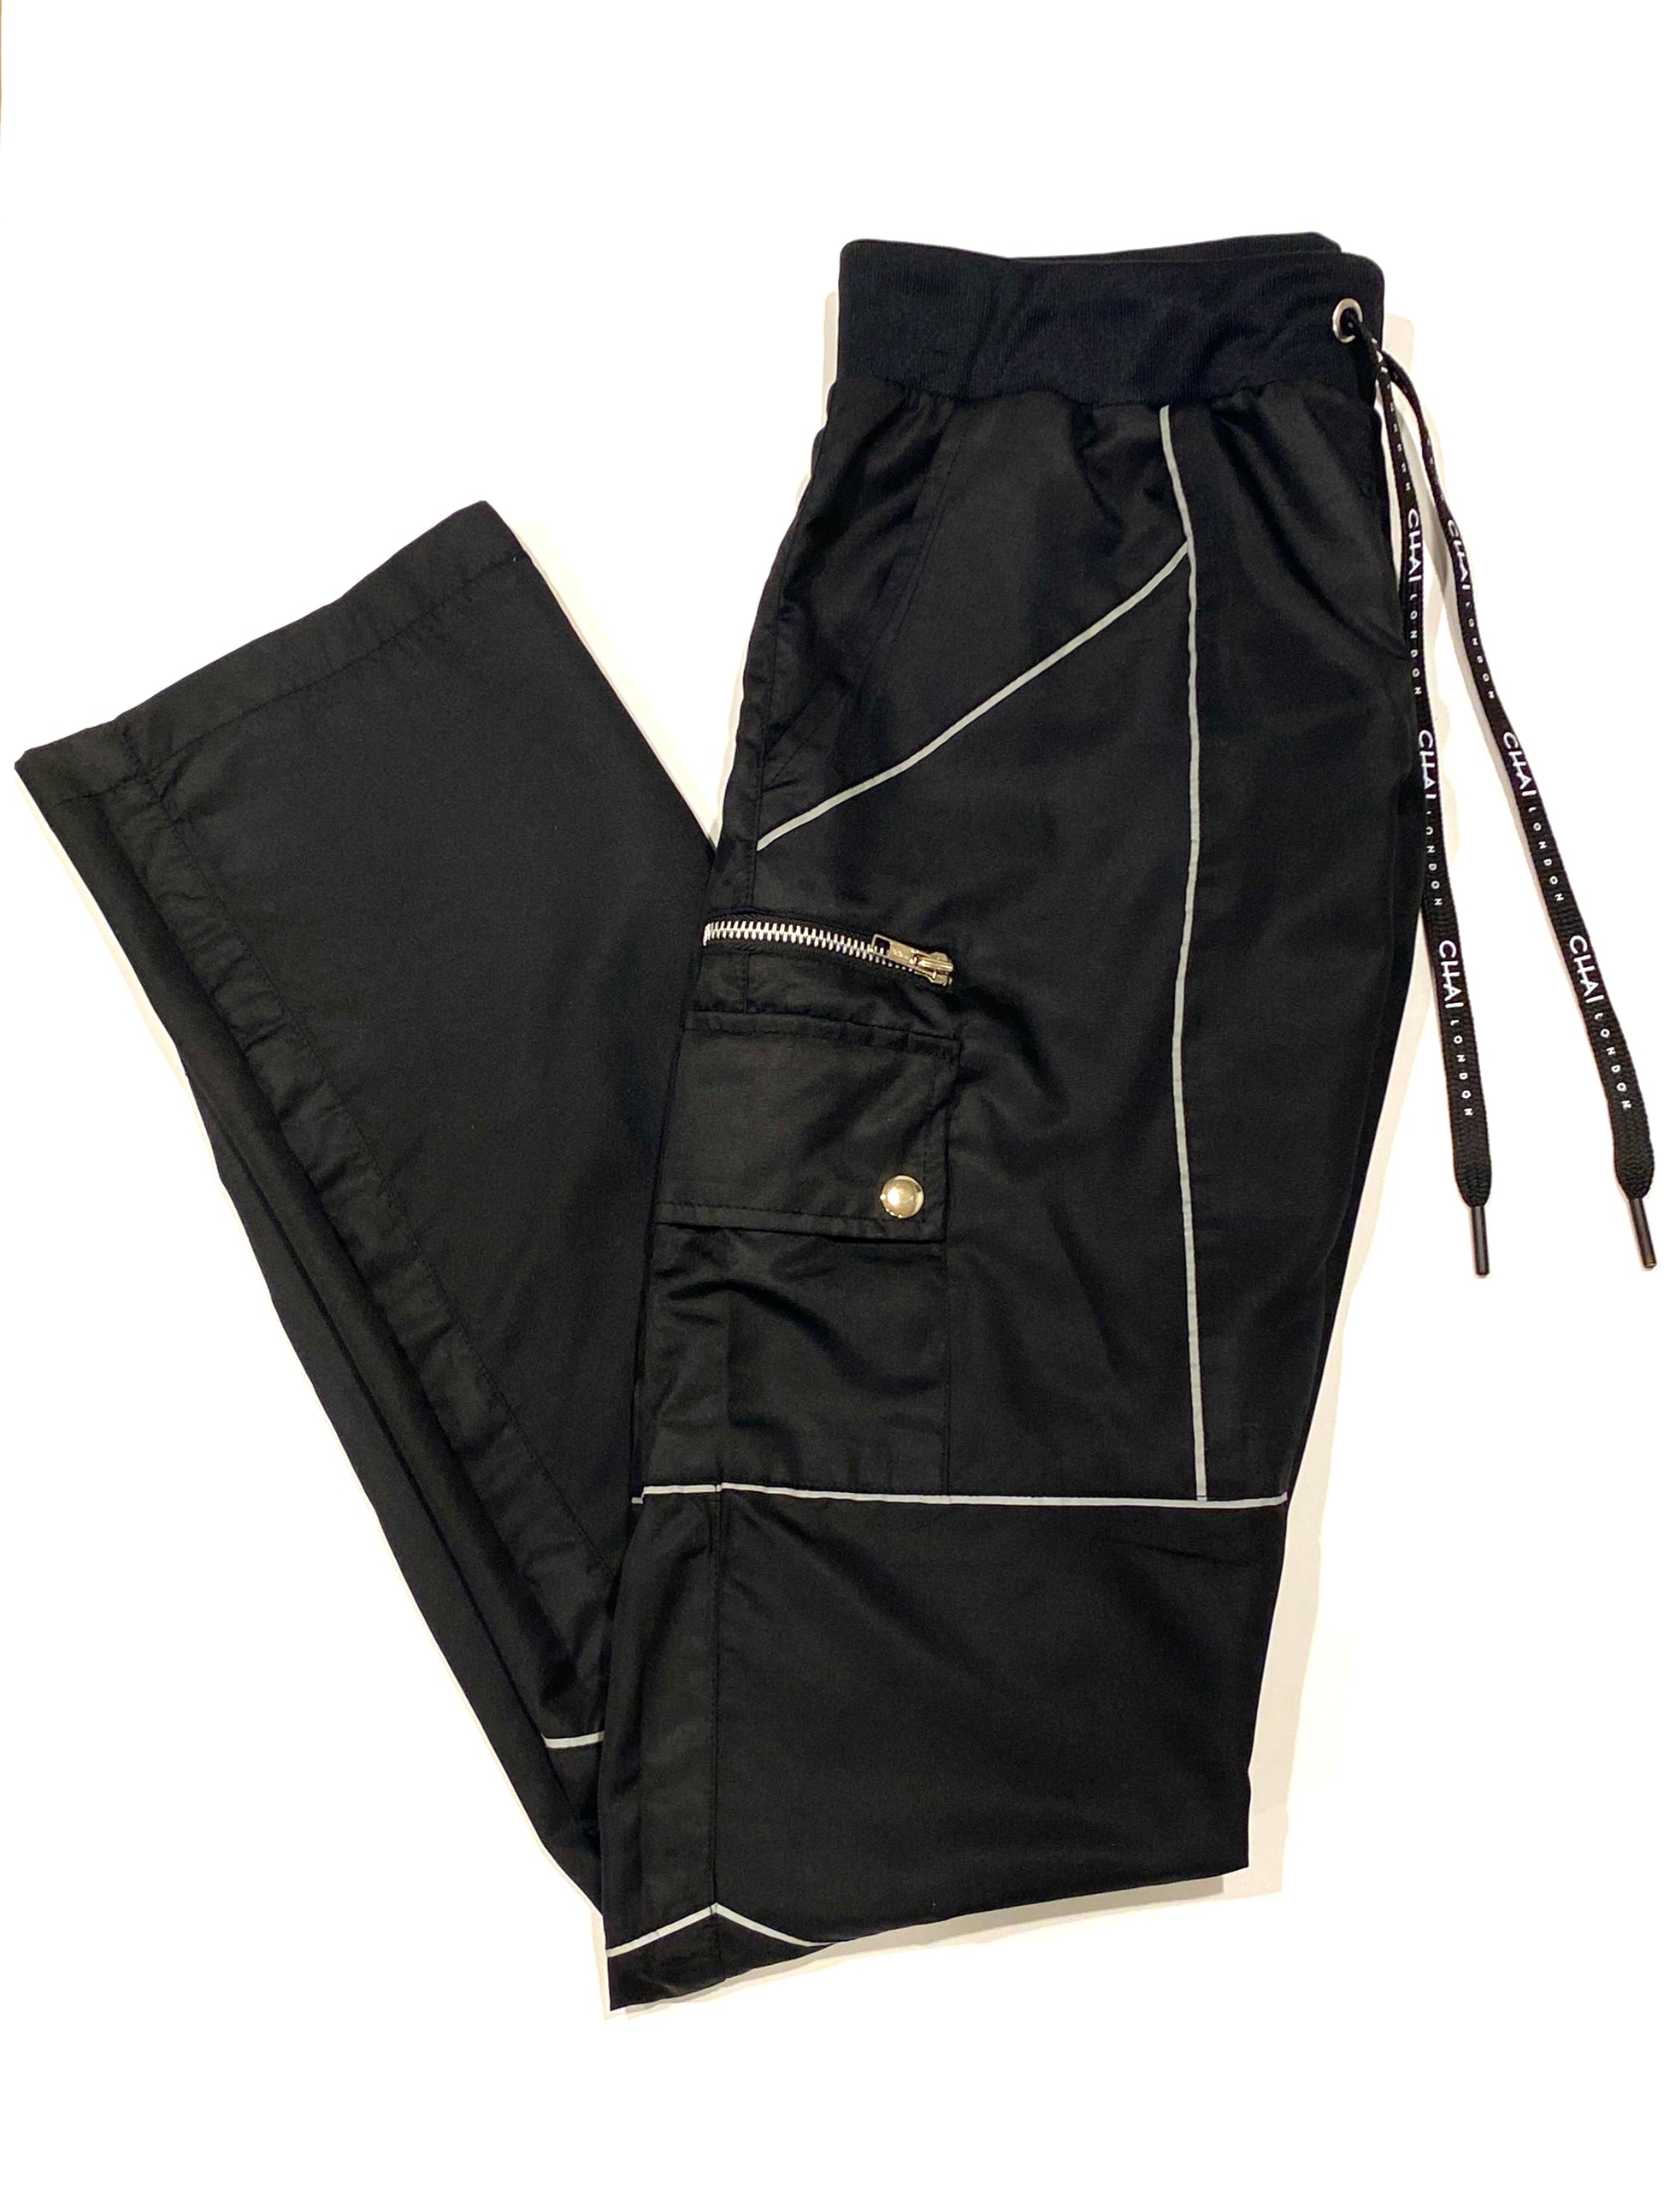 Reflective Piping Nylon Track Pants - Black